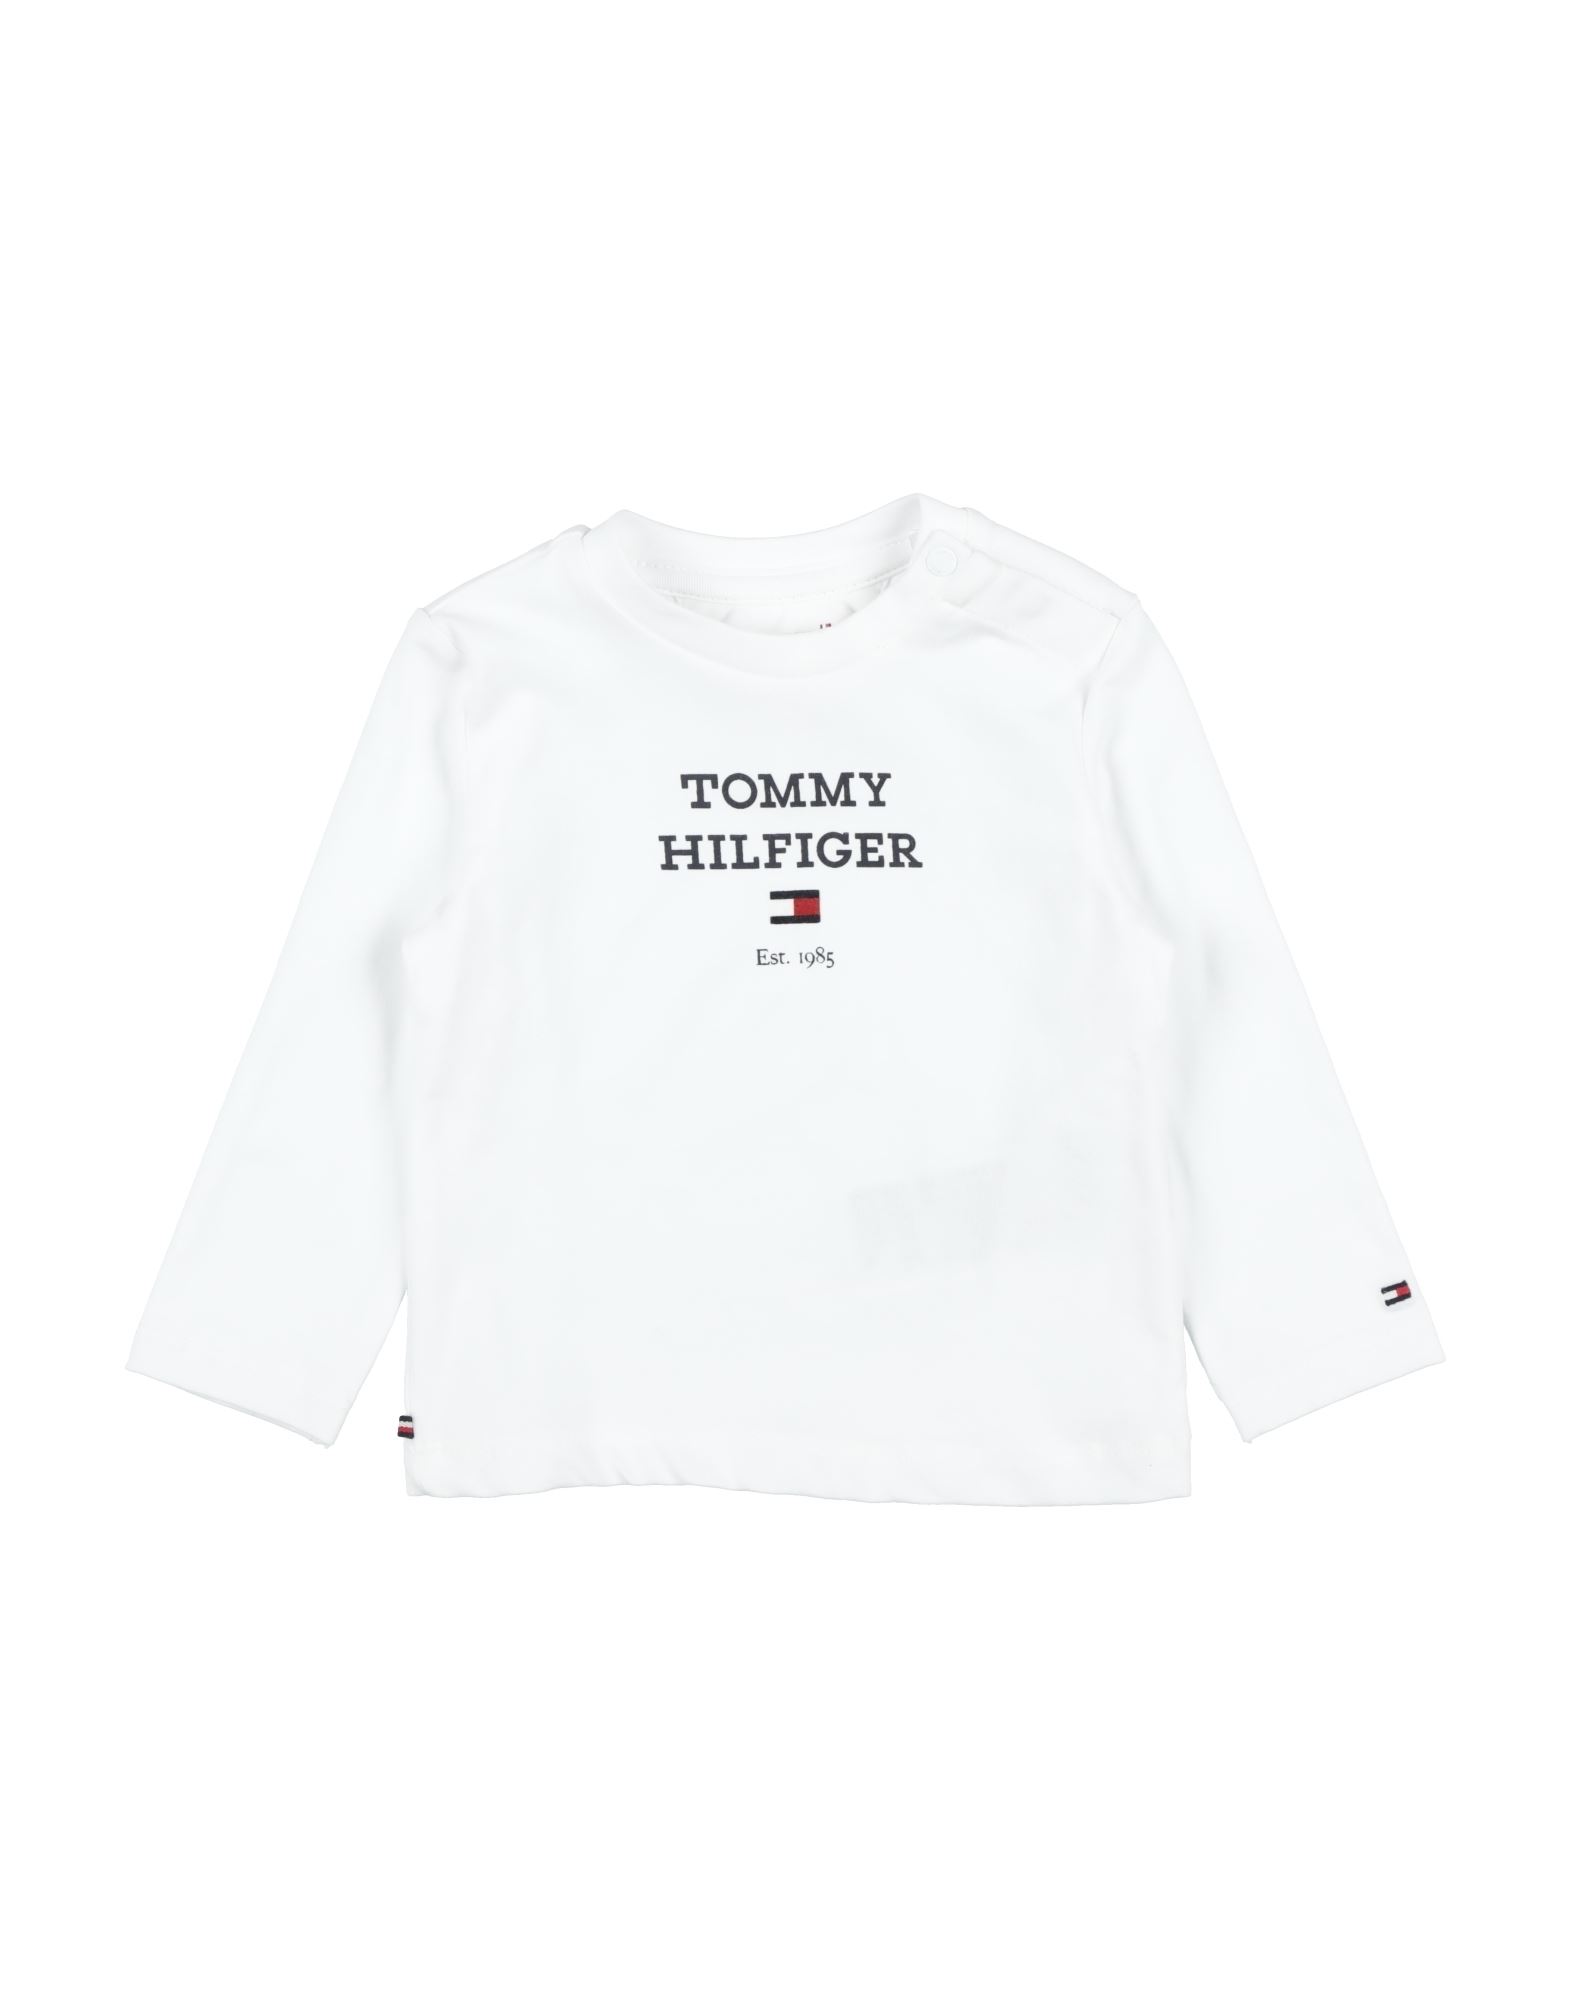 TOMMY HILFIGER T-shirts Kinder Weiß von TOMMY HILFIGER